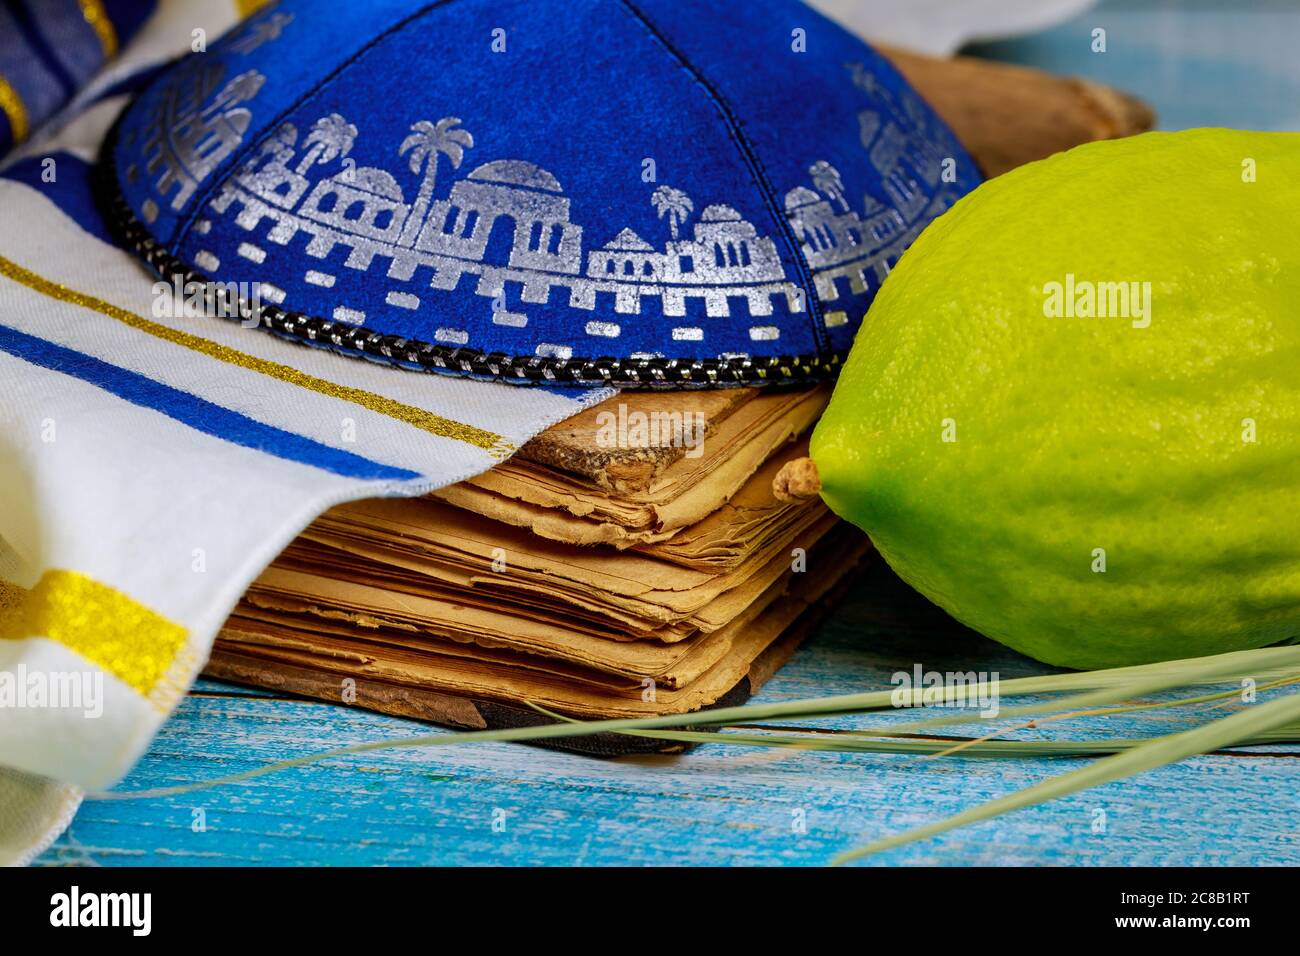 Fête juive de symbole religieux de Sukkot symboles traditionnels Etrog, lulav, hadas, arava livre de prière kippa Tallit Banque D'Images